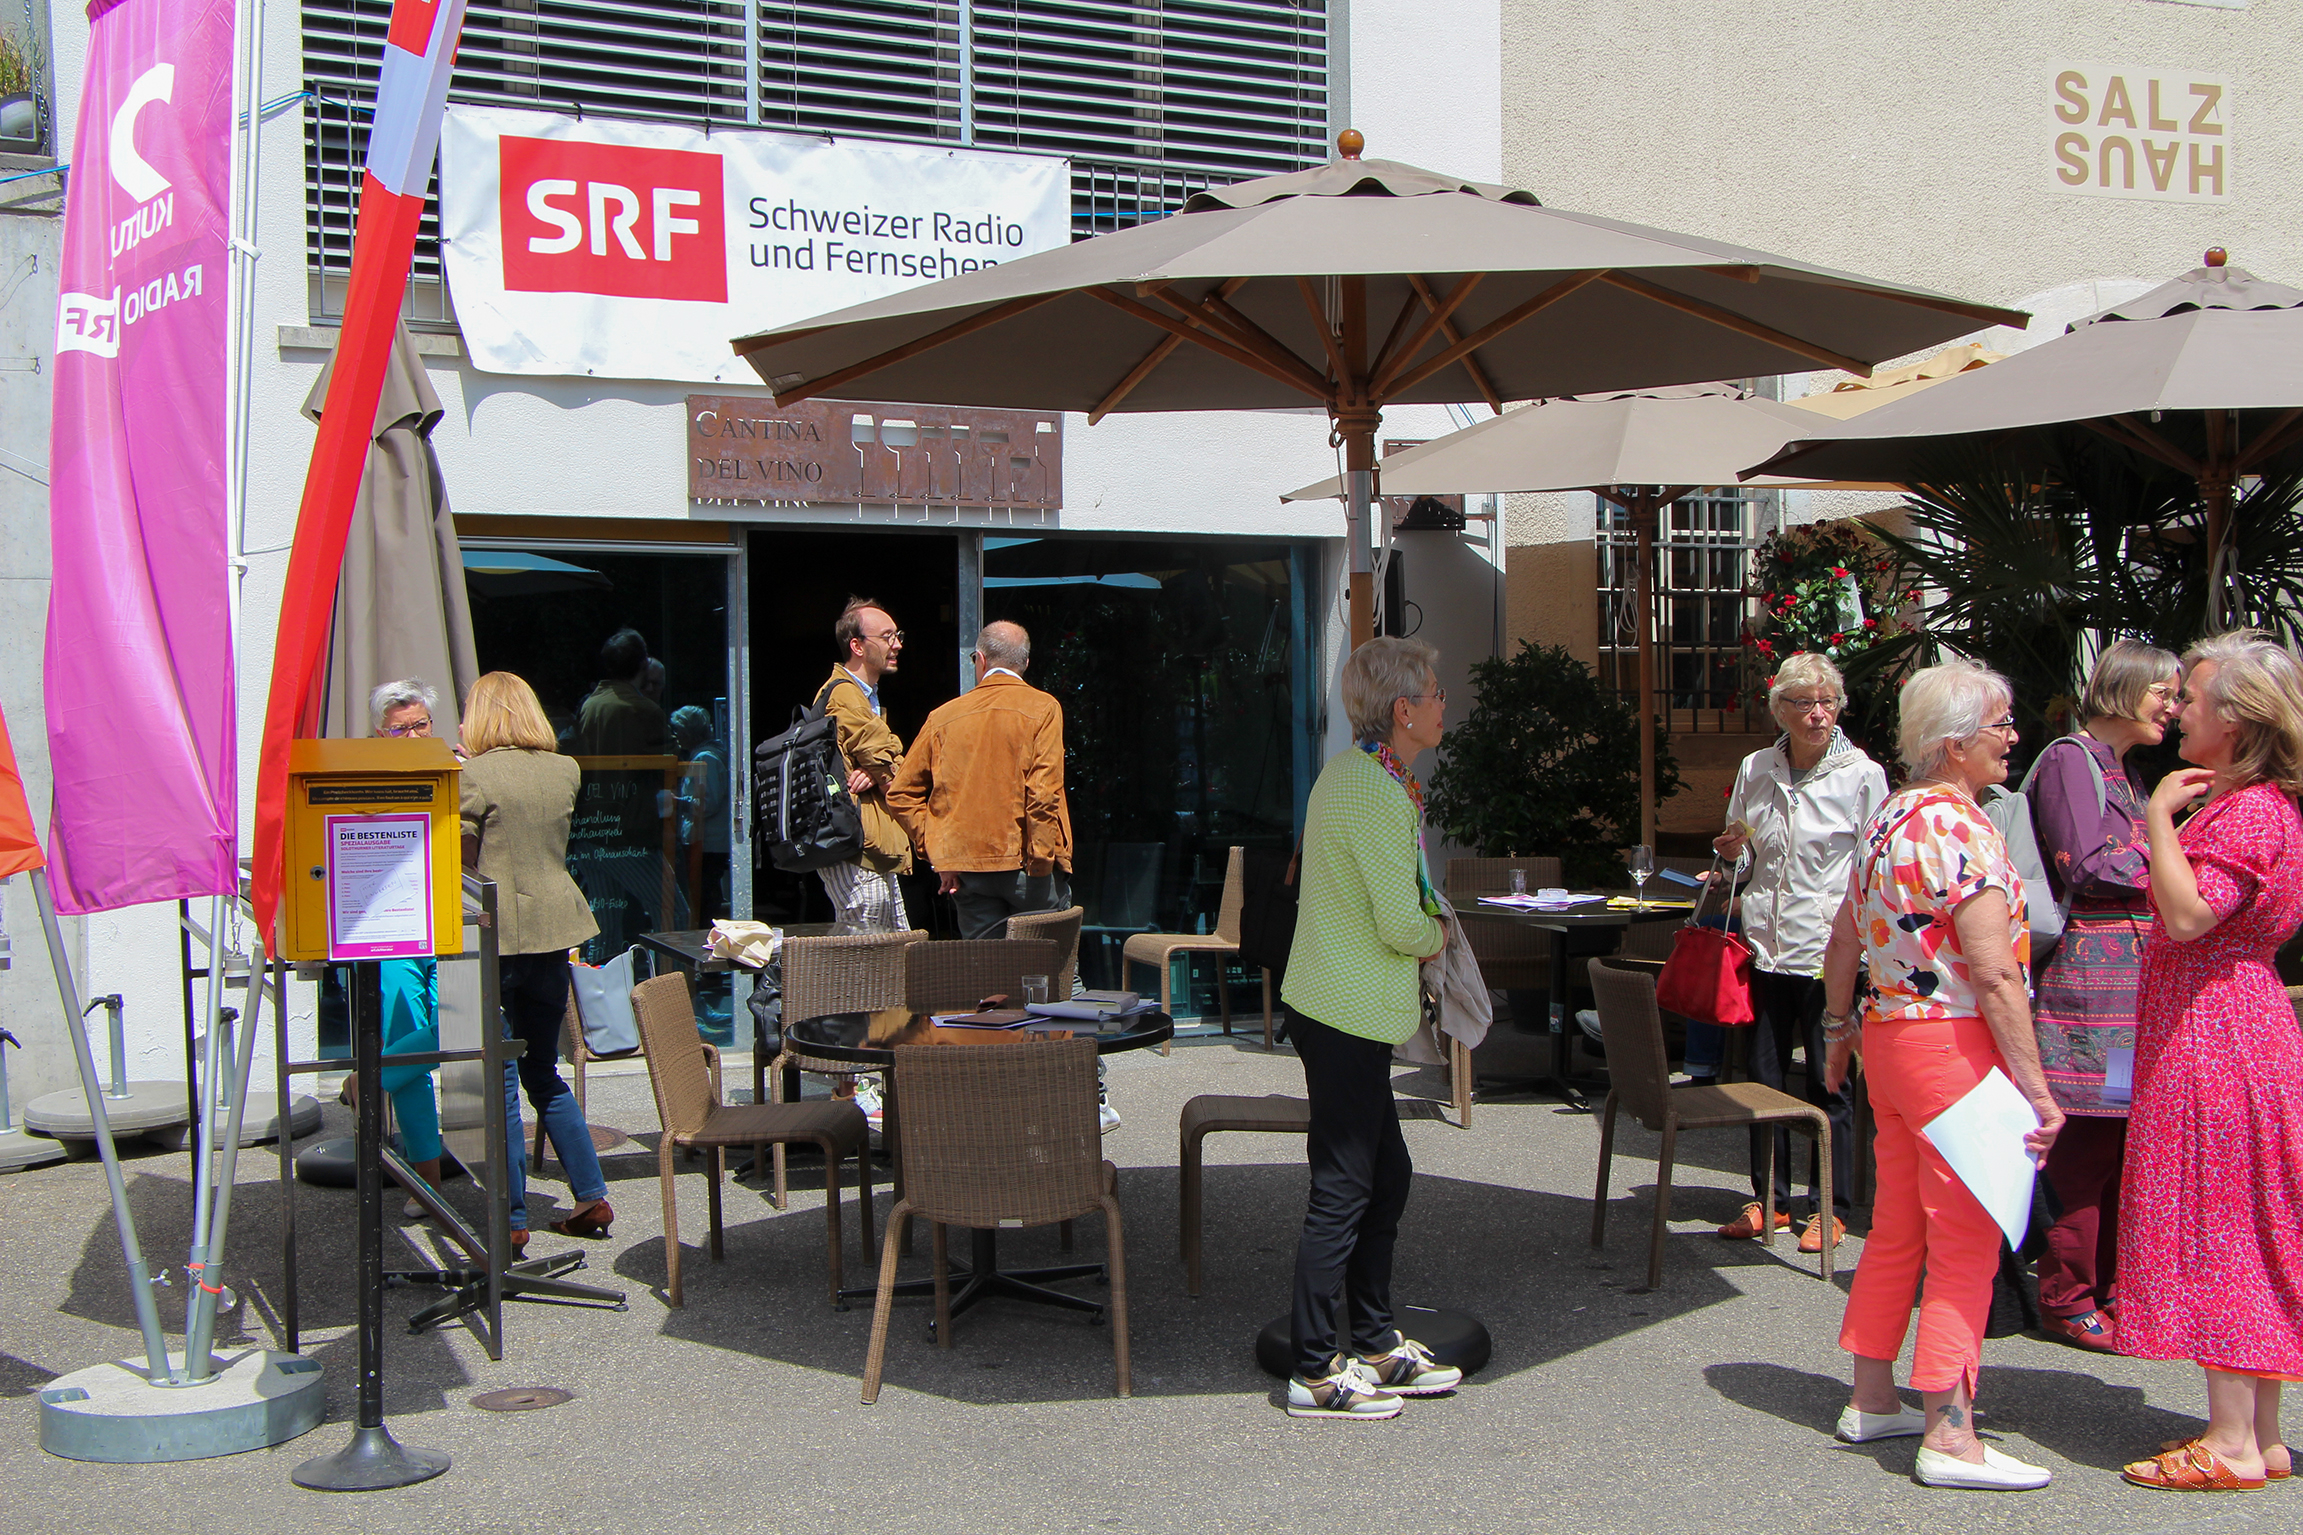 Solothurner LiteraturtageSRF-Literaturteam ist live vor Ort und sendet vor Publikum aus der Cantina del Vino (Bild) am Solothurner Landhausquai.Copyright: SRF